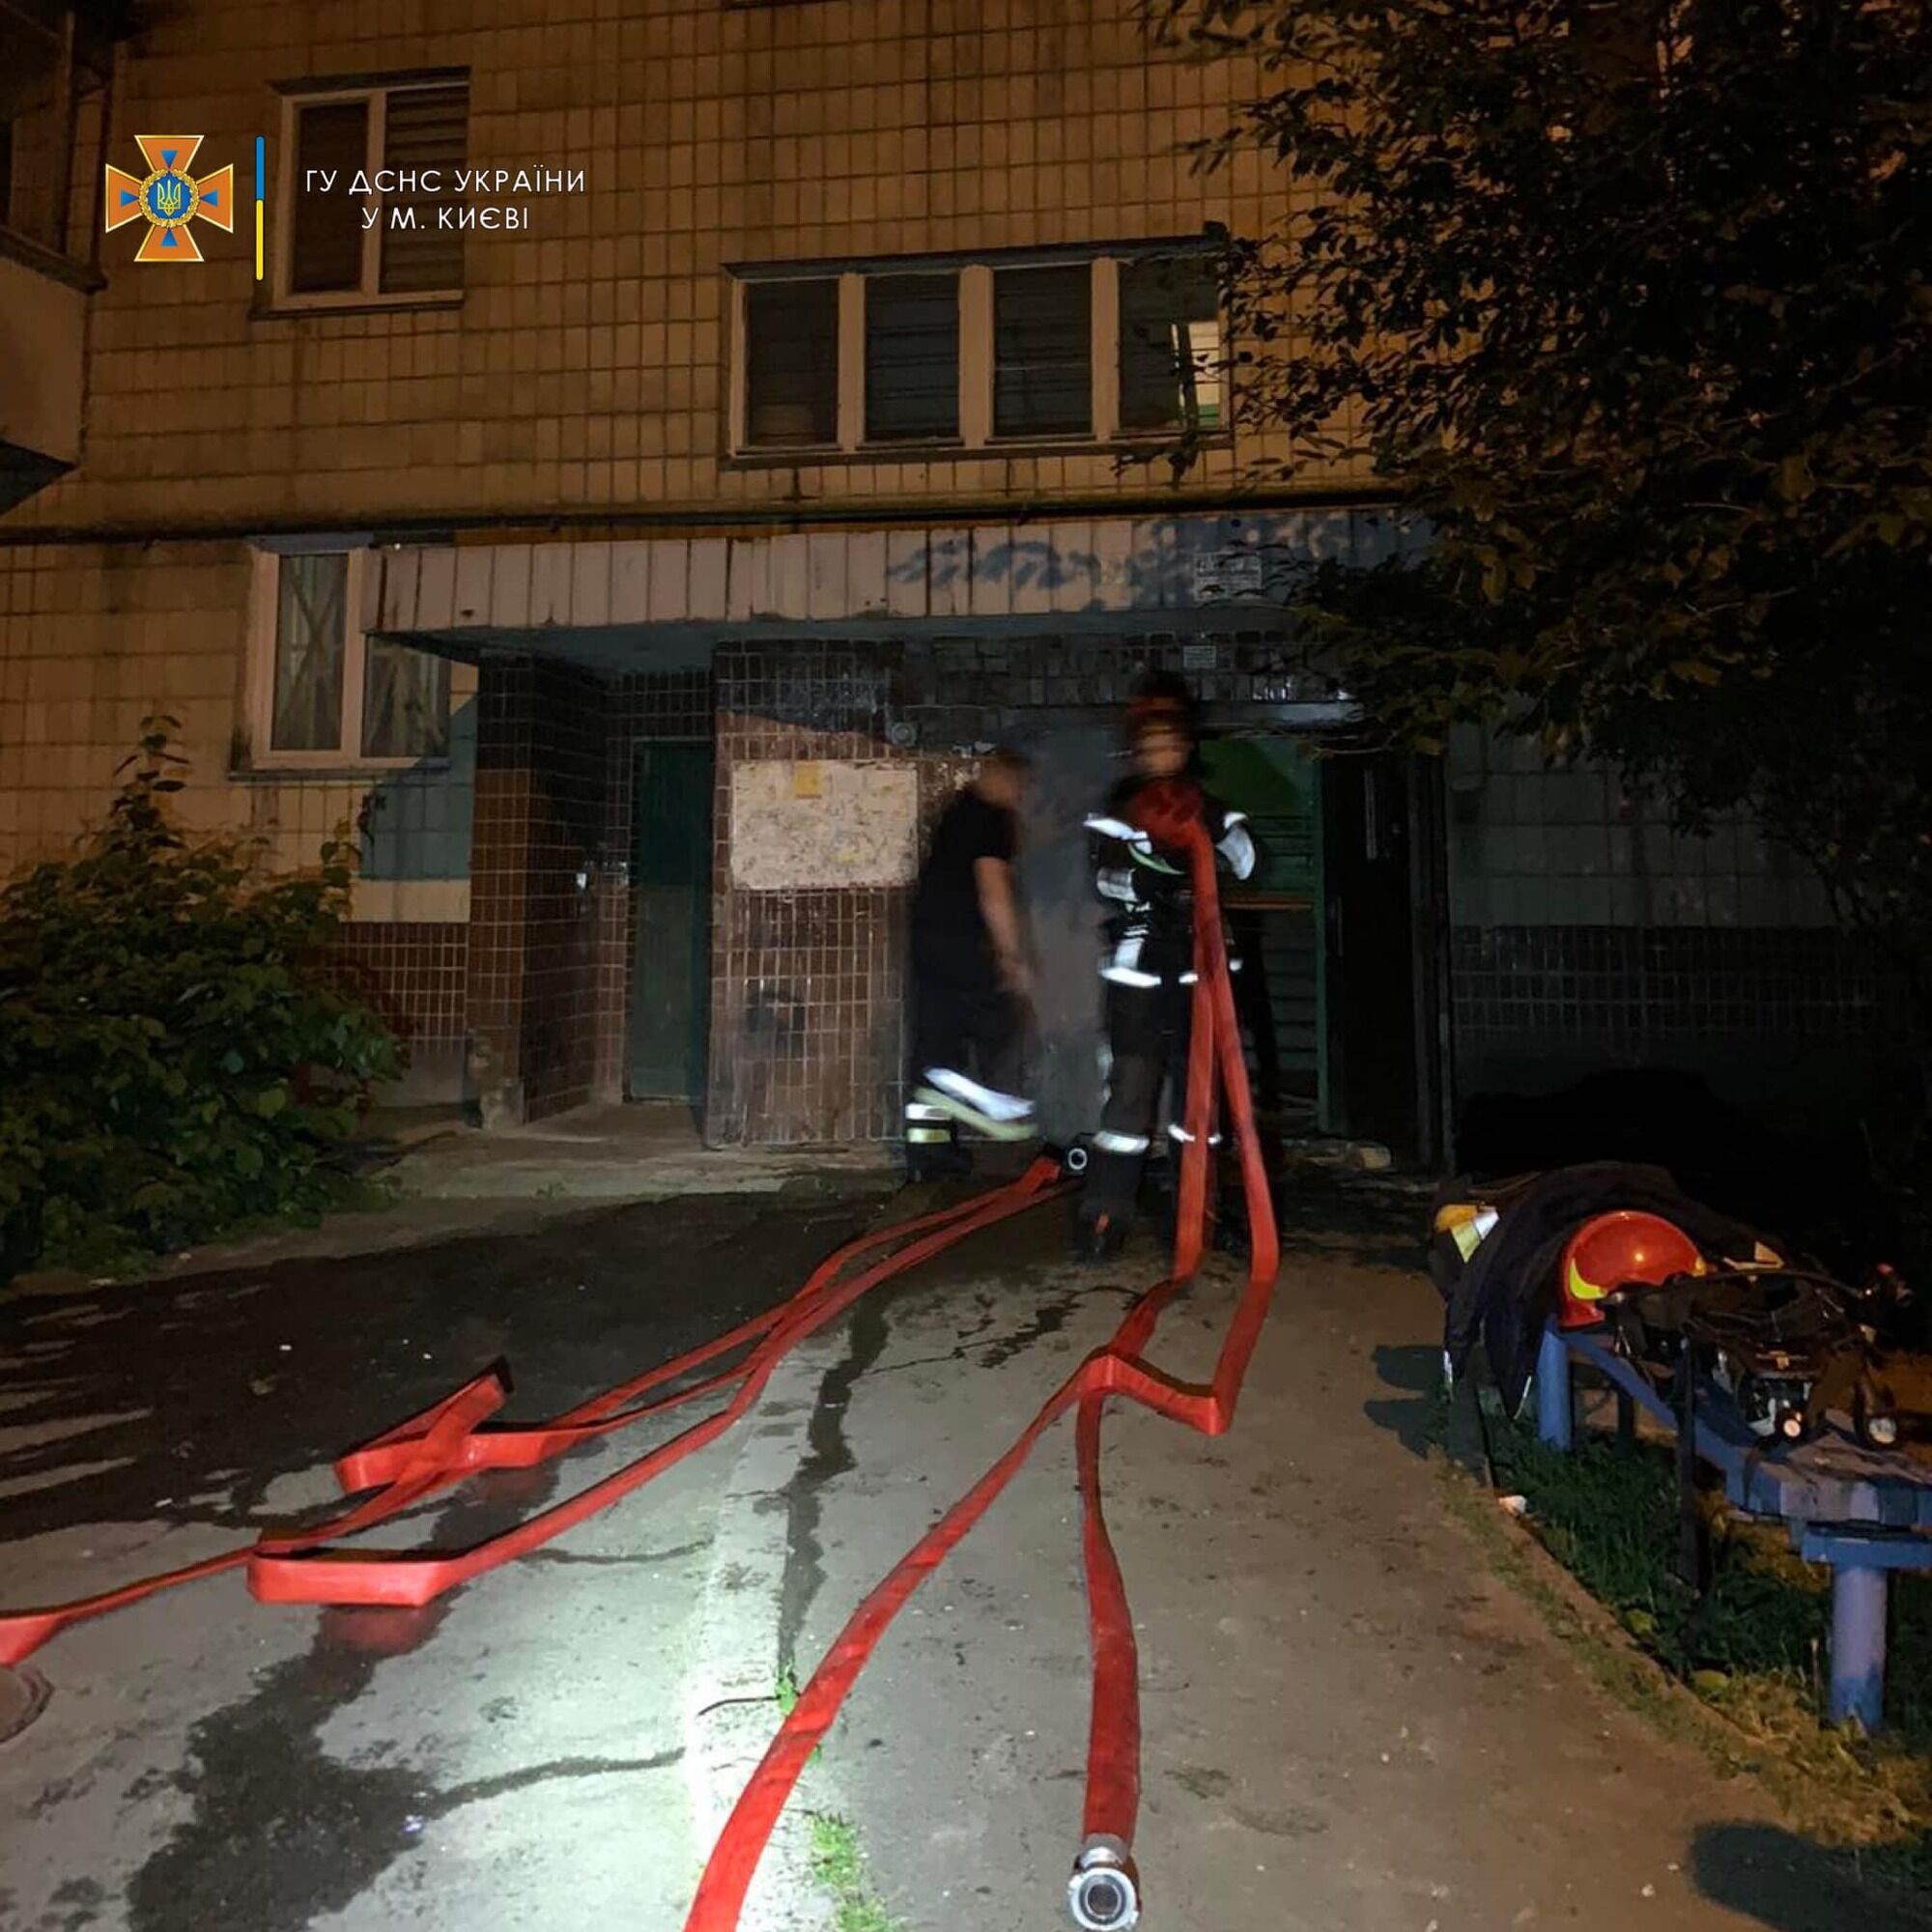 В Киеве во время пожара в многоэтажке спасли мужчину: еще пятерых жителей эвакуировали. Фото